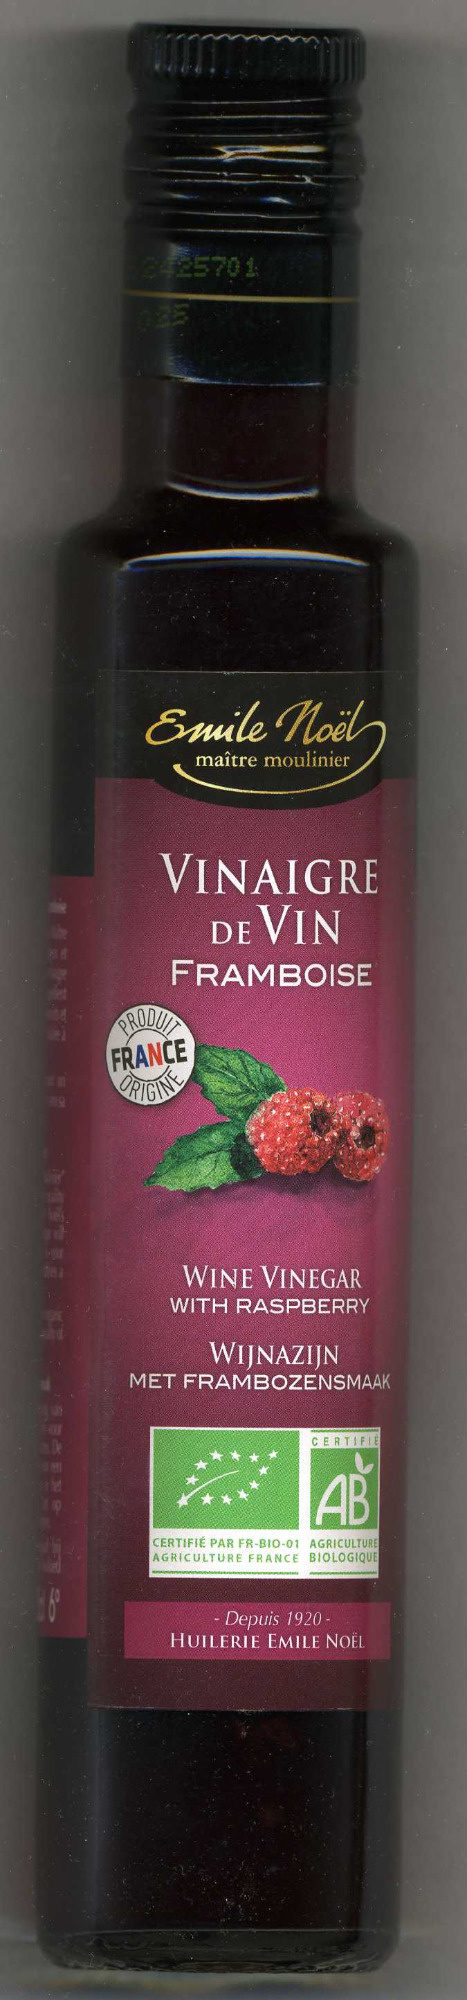 VINAIGRE VIN FRAMBOISE - Product - fr